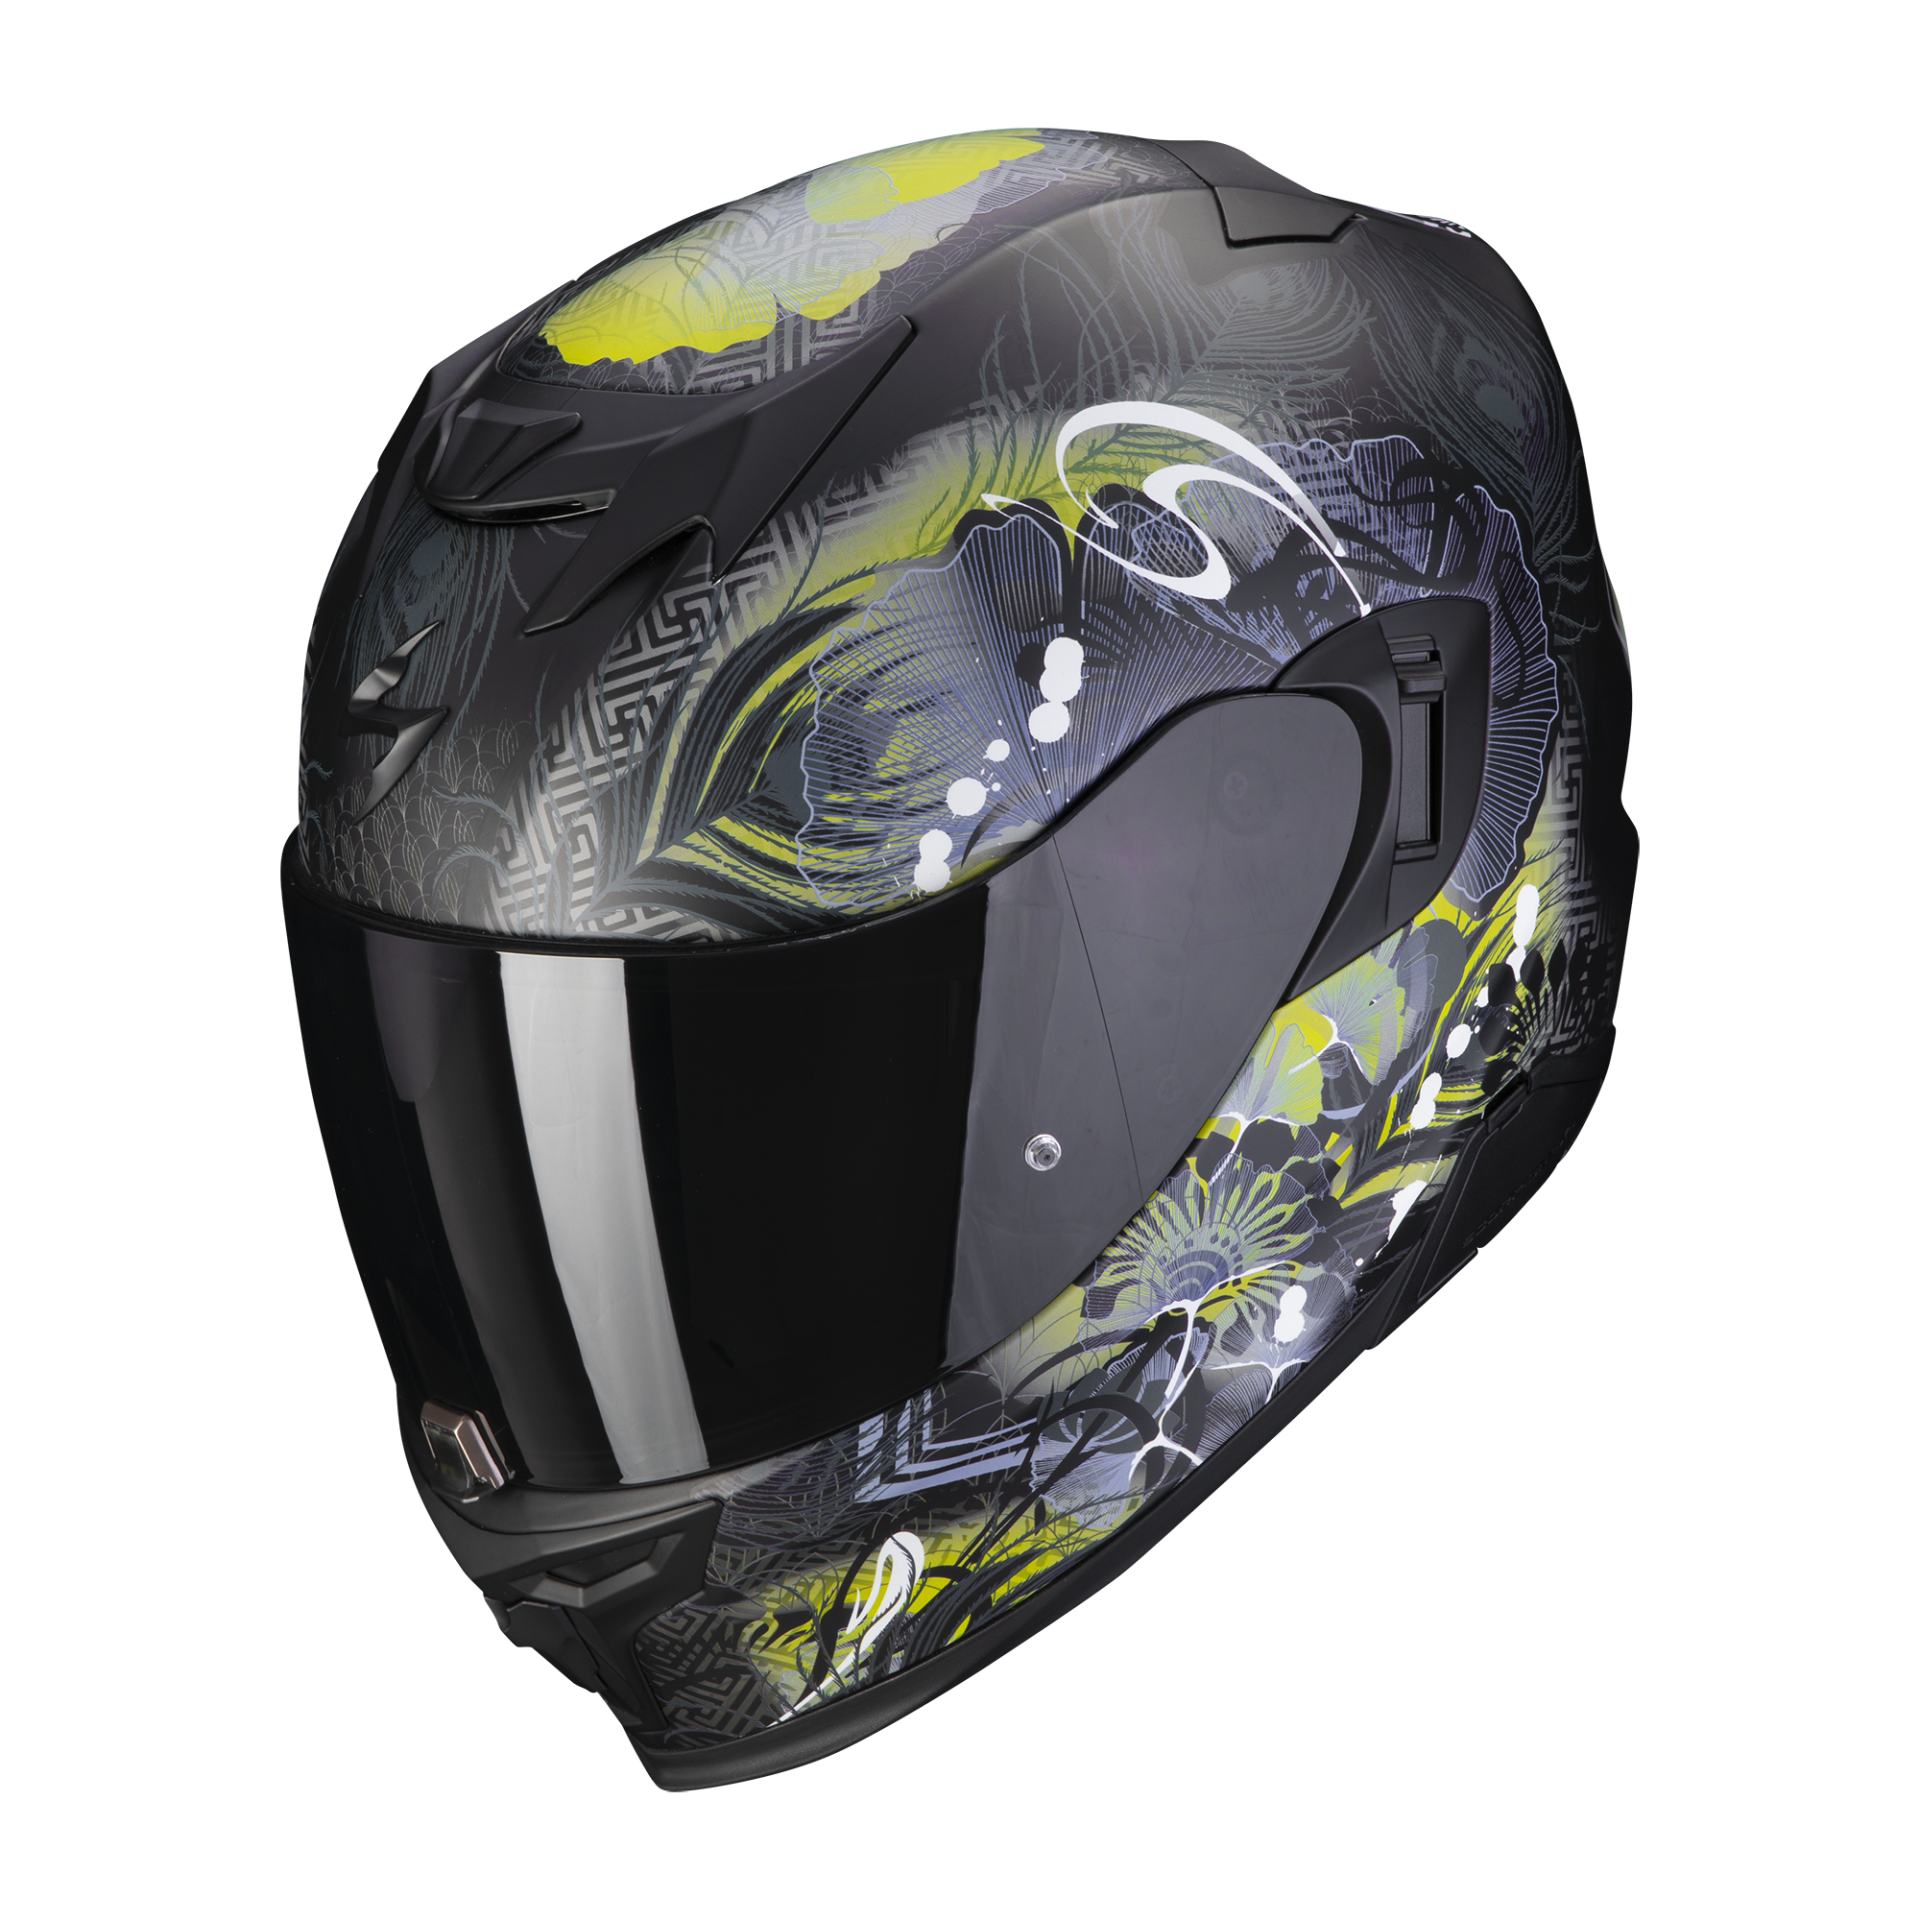 Image of Scorpion Exo-520 Evo Air Melrose Matt Black-Yellow Full Face Helmet Size S EN